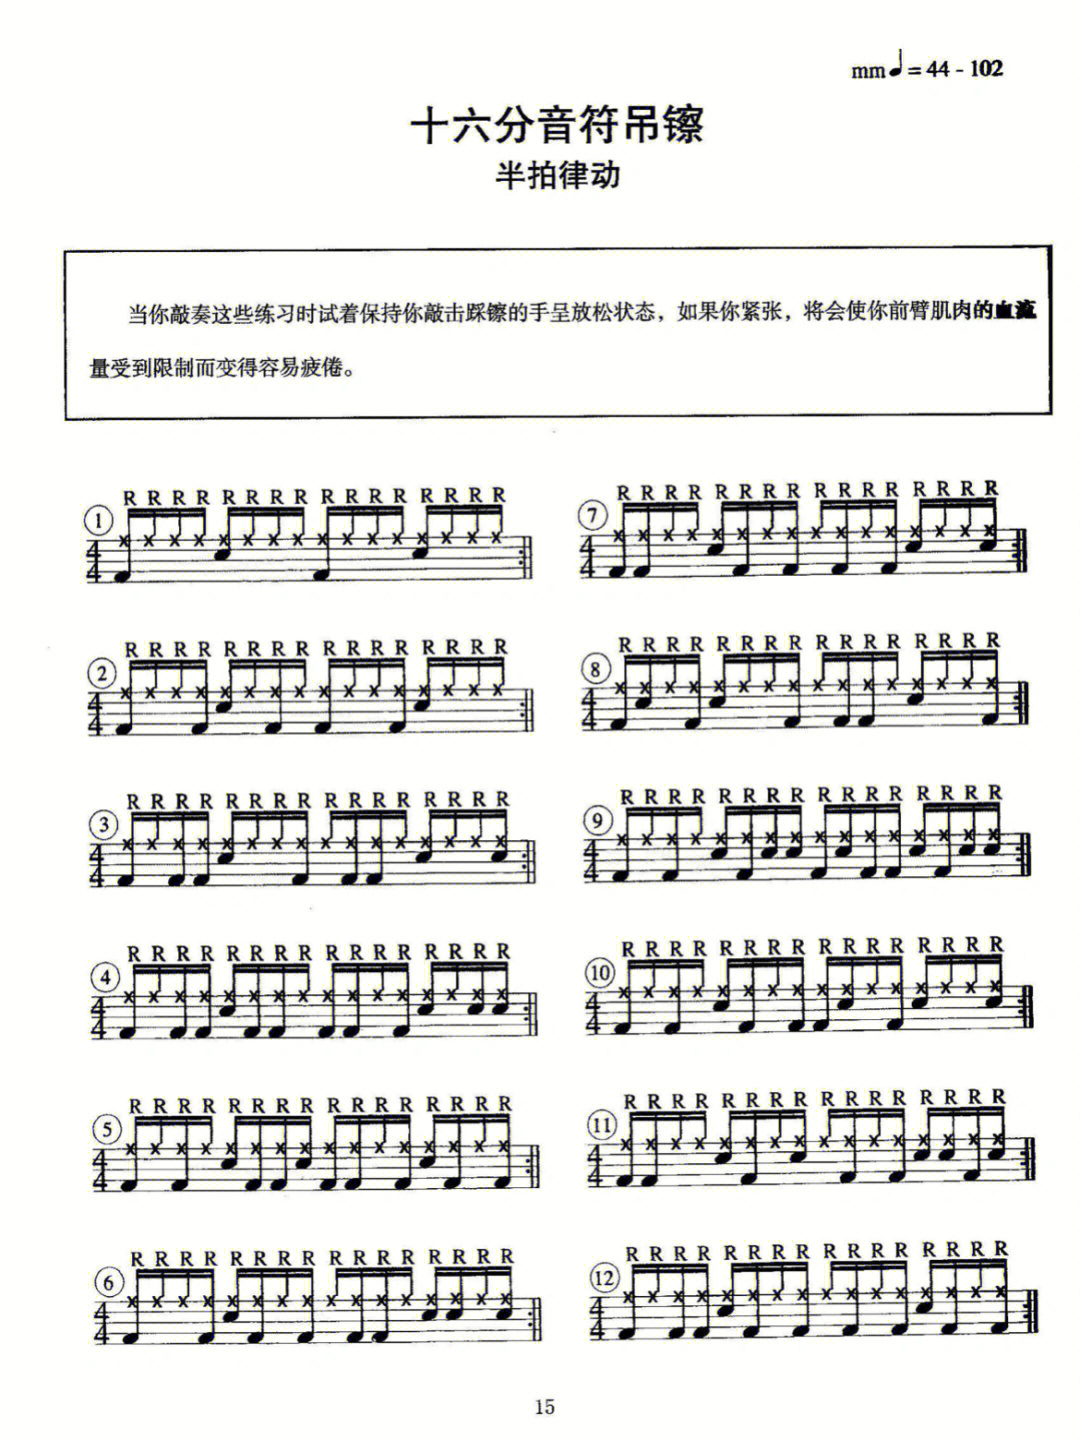 架子鼓36种基本节奏型图片